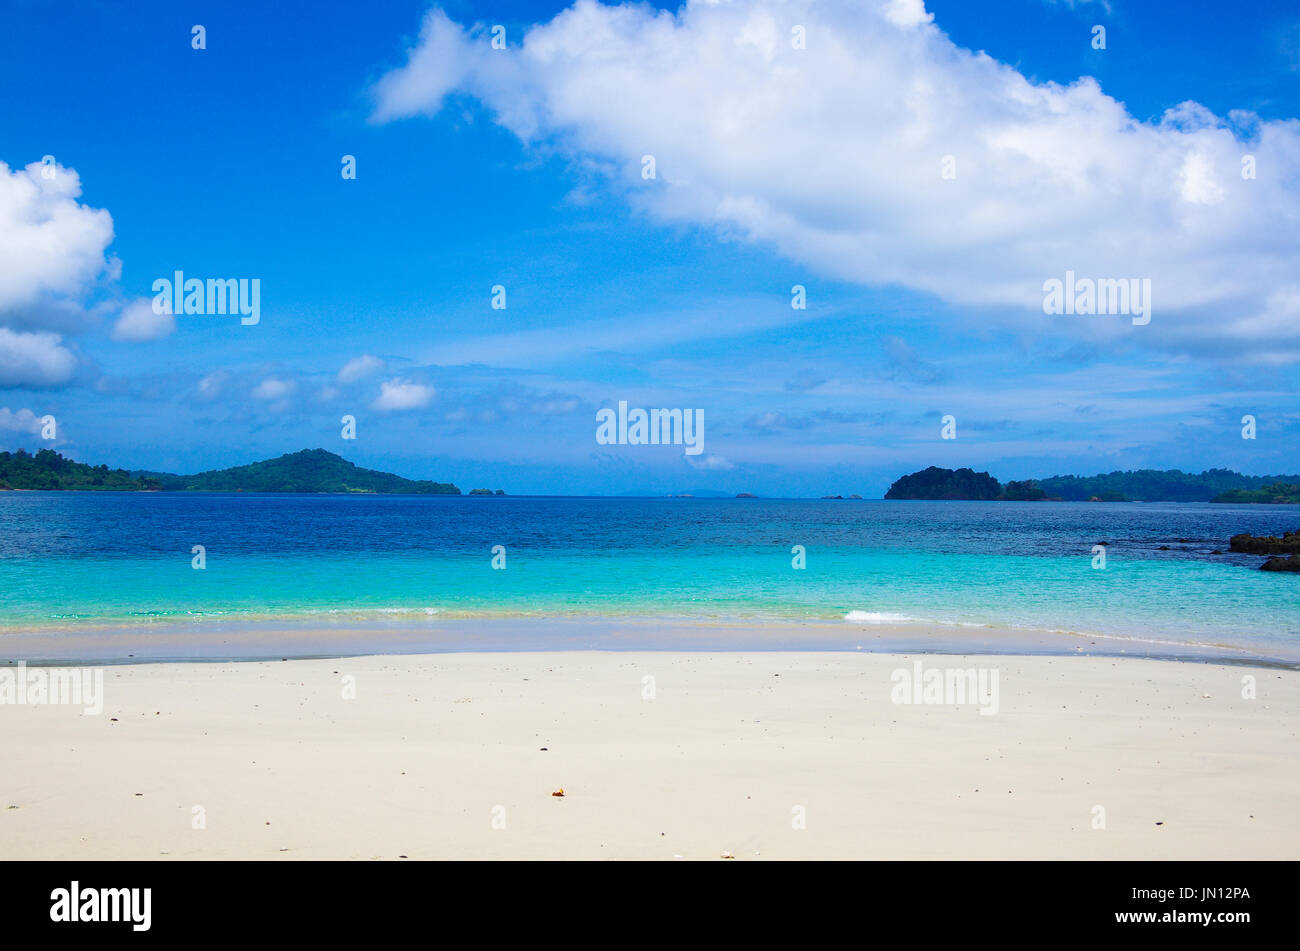 Spiaggia bellissima scena con acqua cristallina sull'isola chiamata Isla Granito de oro su coiba parco naturale nazionale in Panama Foto Stock